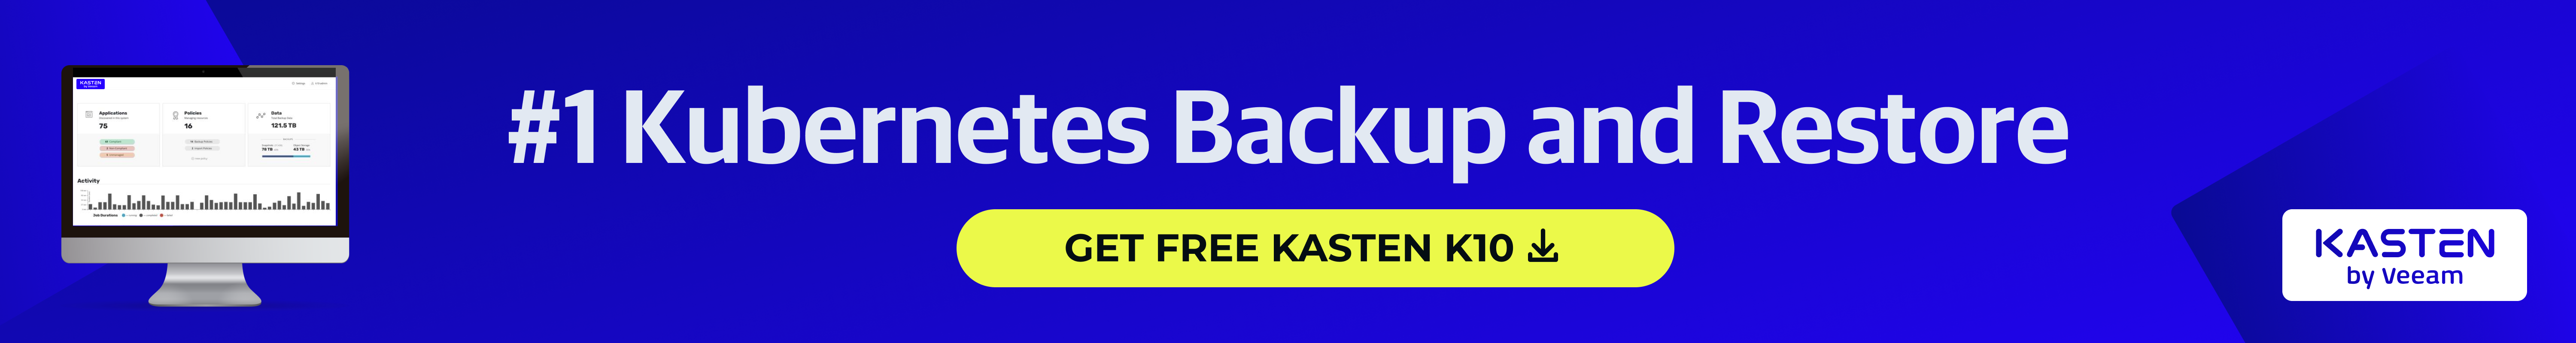 Get Free Kasten K10-1